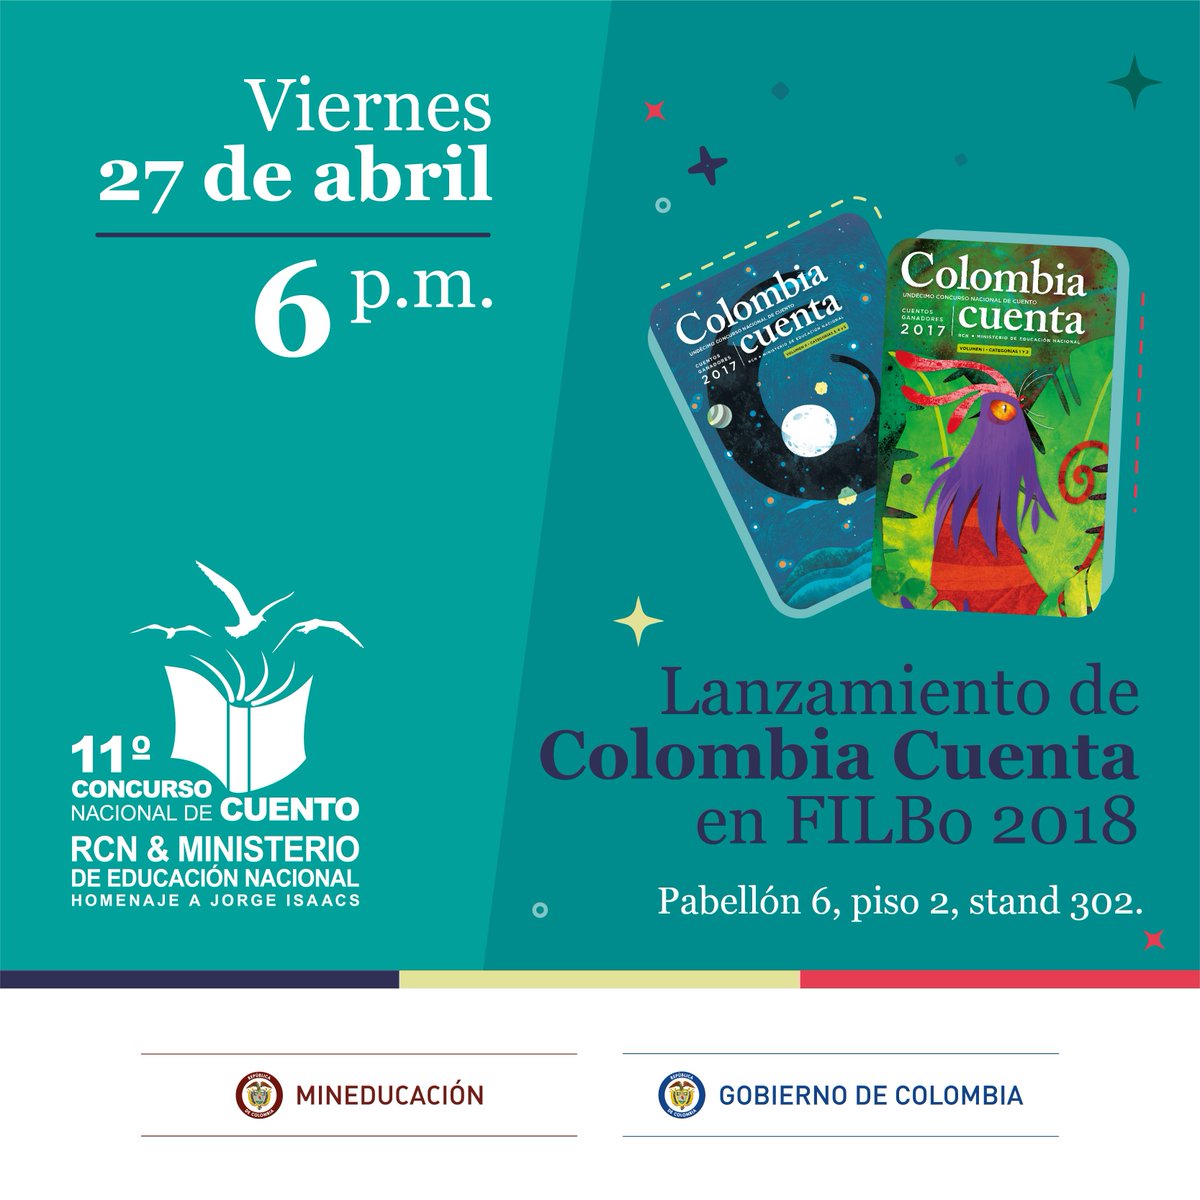 Conoce los cuentos escritos por los estudiantes de Colombia? Lanzamiento @concurnalcuento en #FILBo2018 #CuálEsTuCuento @Mineducacion @YanethGiha